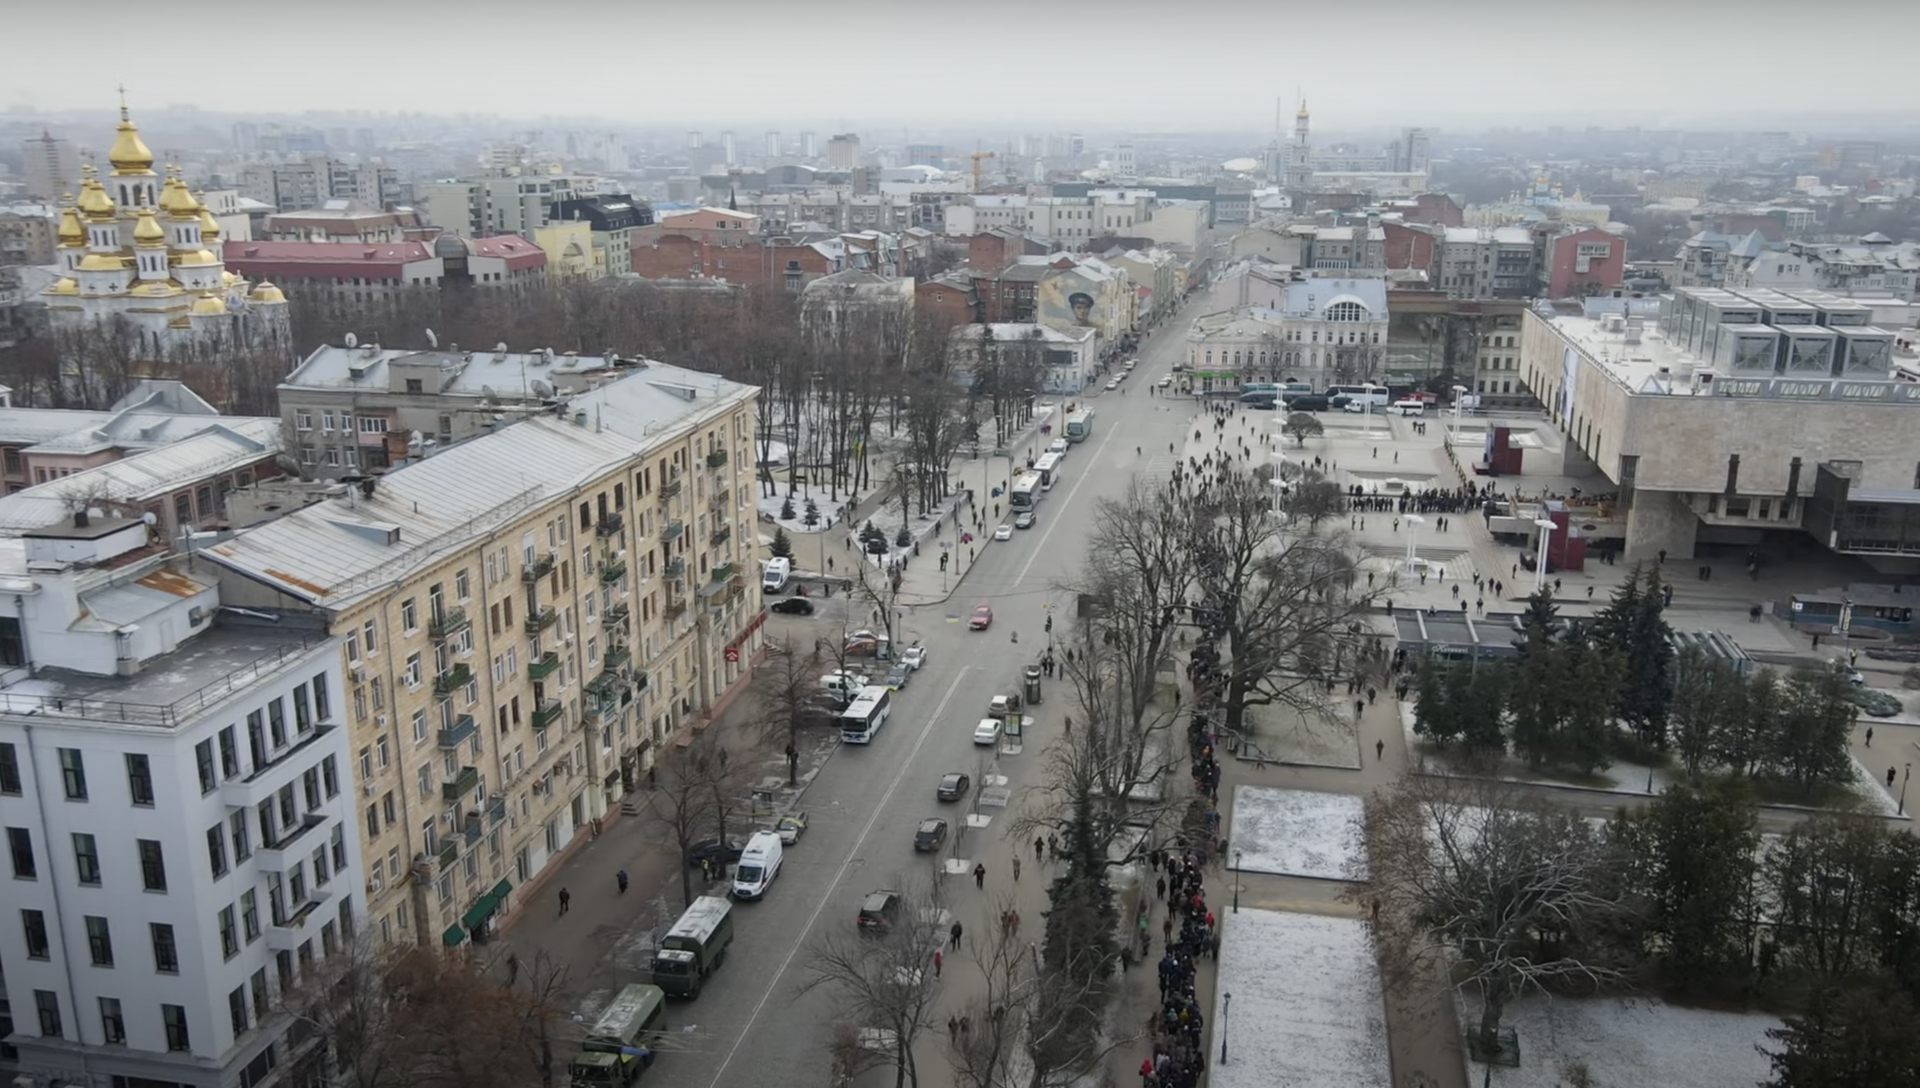 Express: Харьков погрузился во тьму после ударов ВС РФ по стратегическим объектам